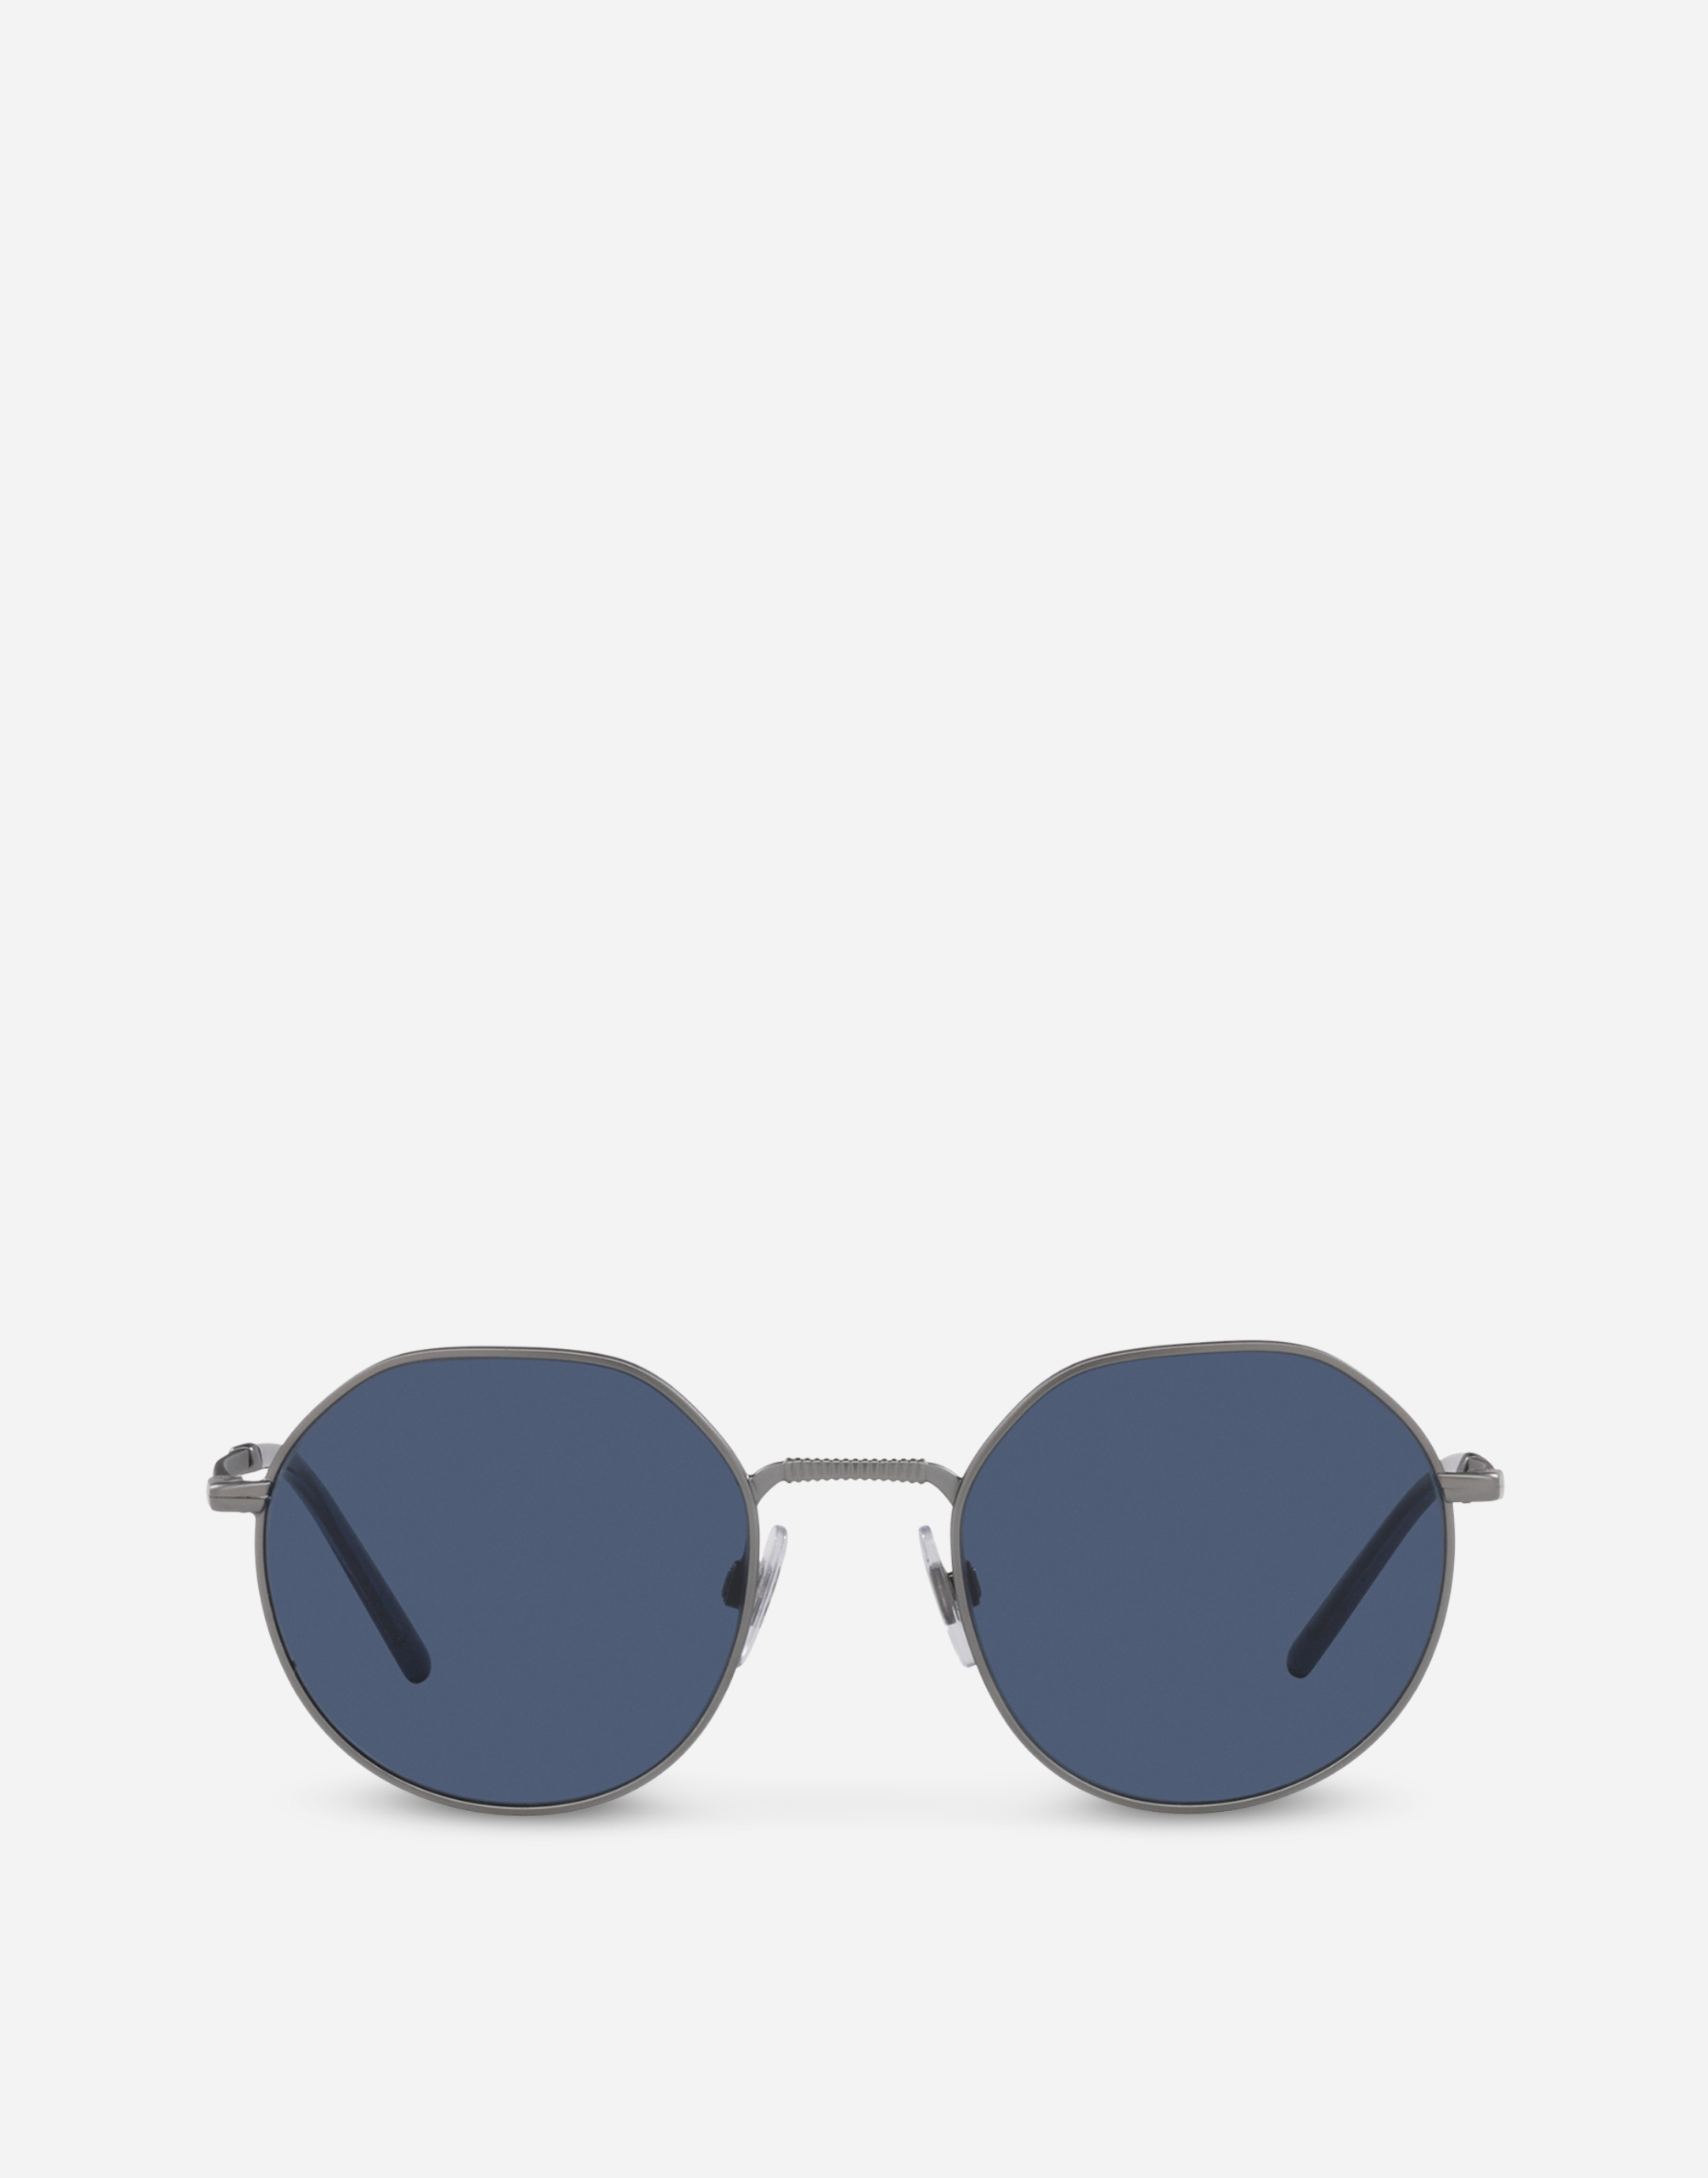 Gros grain sunglasses in Gun metal matte